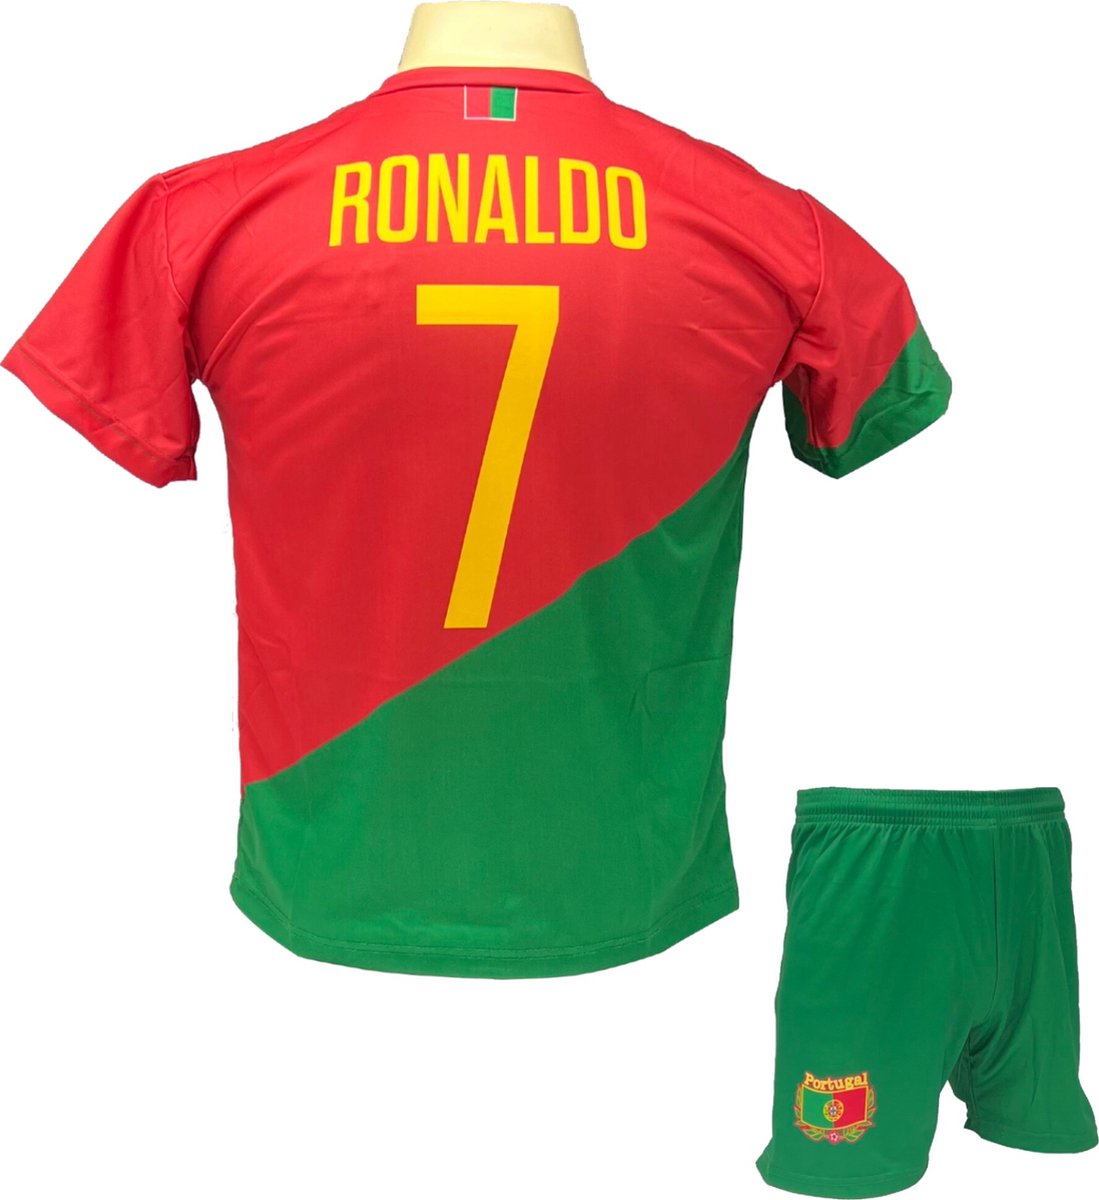 Cristiano Ronaldo CR7 Portugal Tenue - Voetbal Shirt + broekje set - EK/WK voetbaltenue - Maat XL